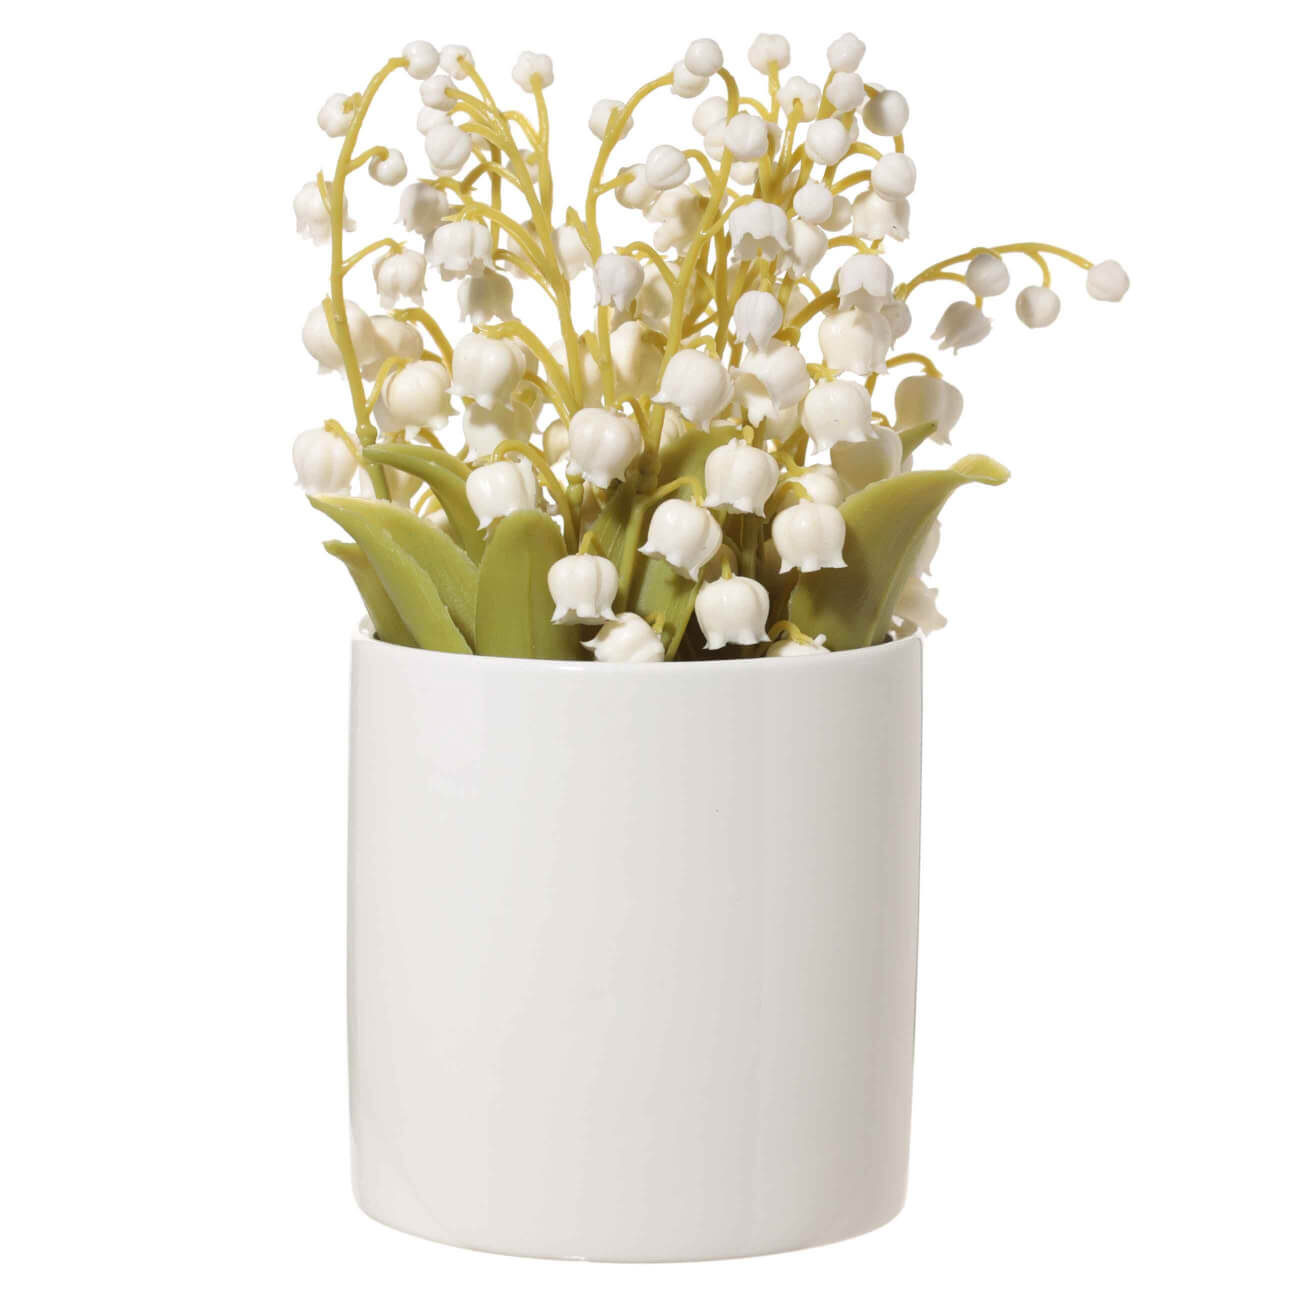 Растение искусственное, 16 см, в горшке, керамика/резина, Ландыши, May-lily растение искусственное 16 см в горшке керамика резина ландыши may lily